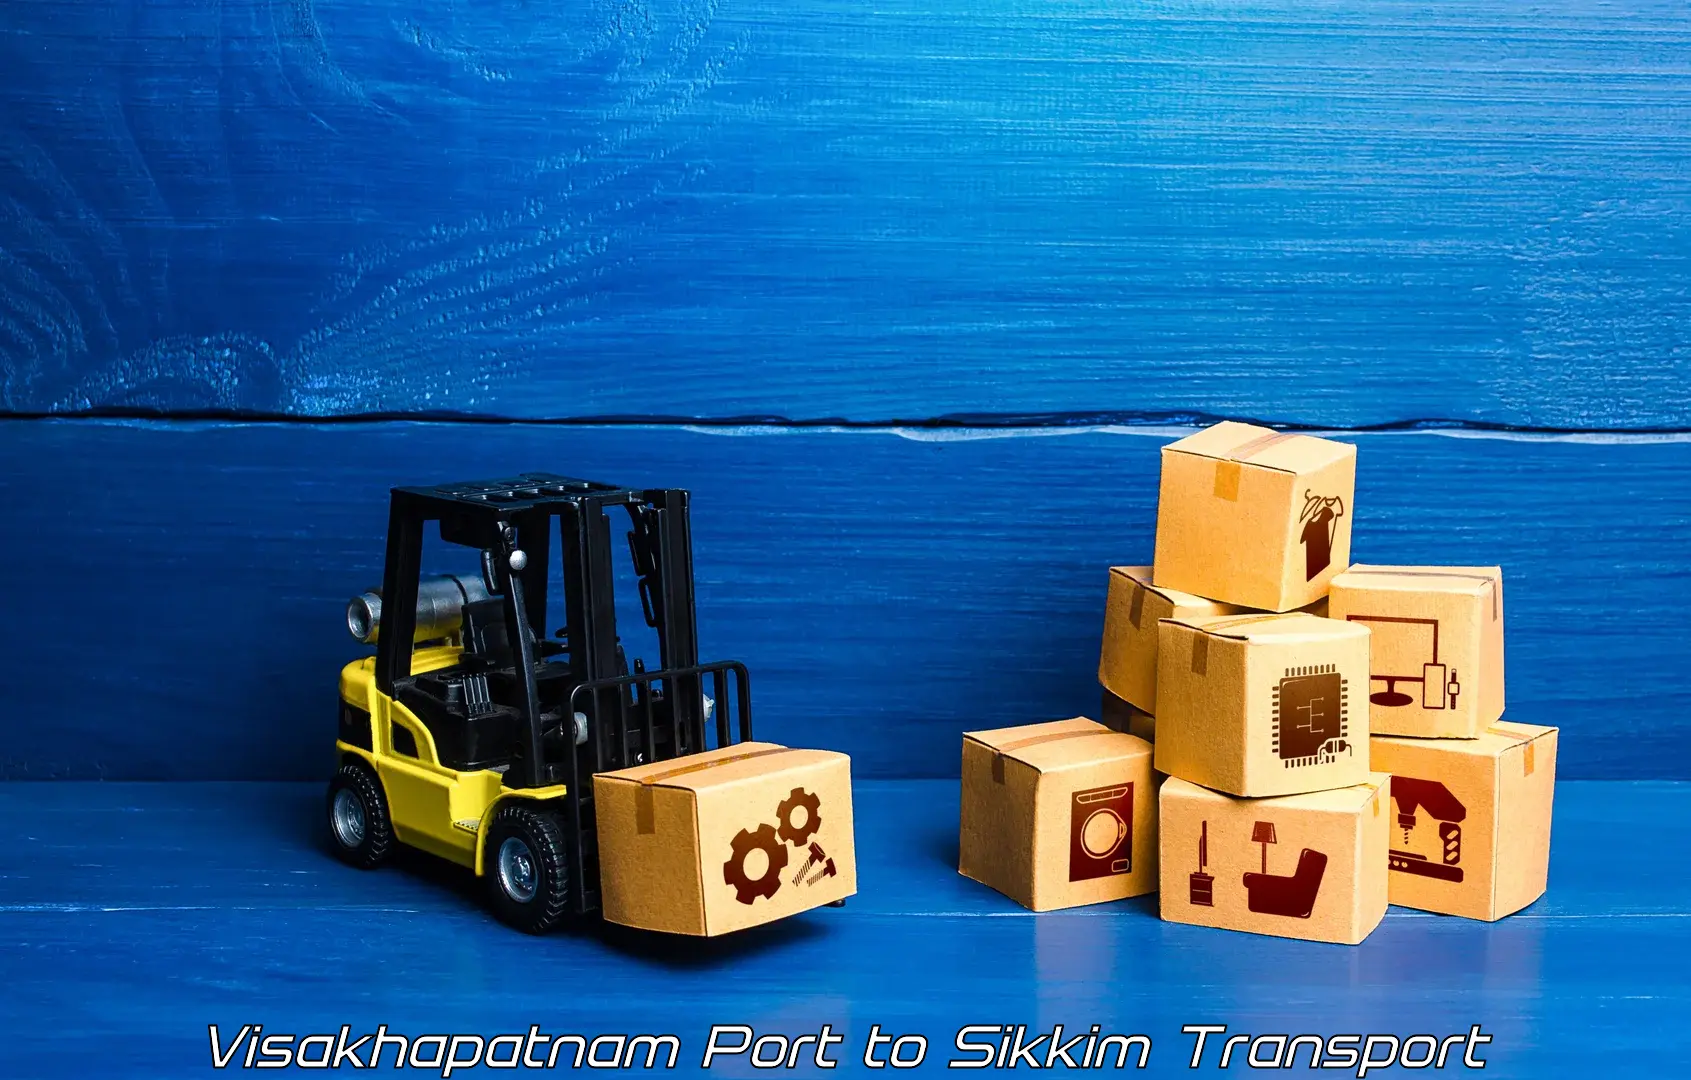 Furniture transport service Visakhapatnam Port to Mangan